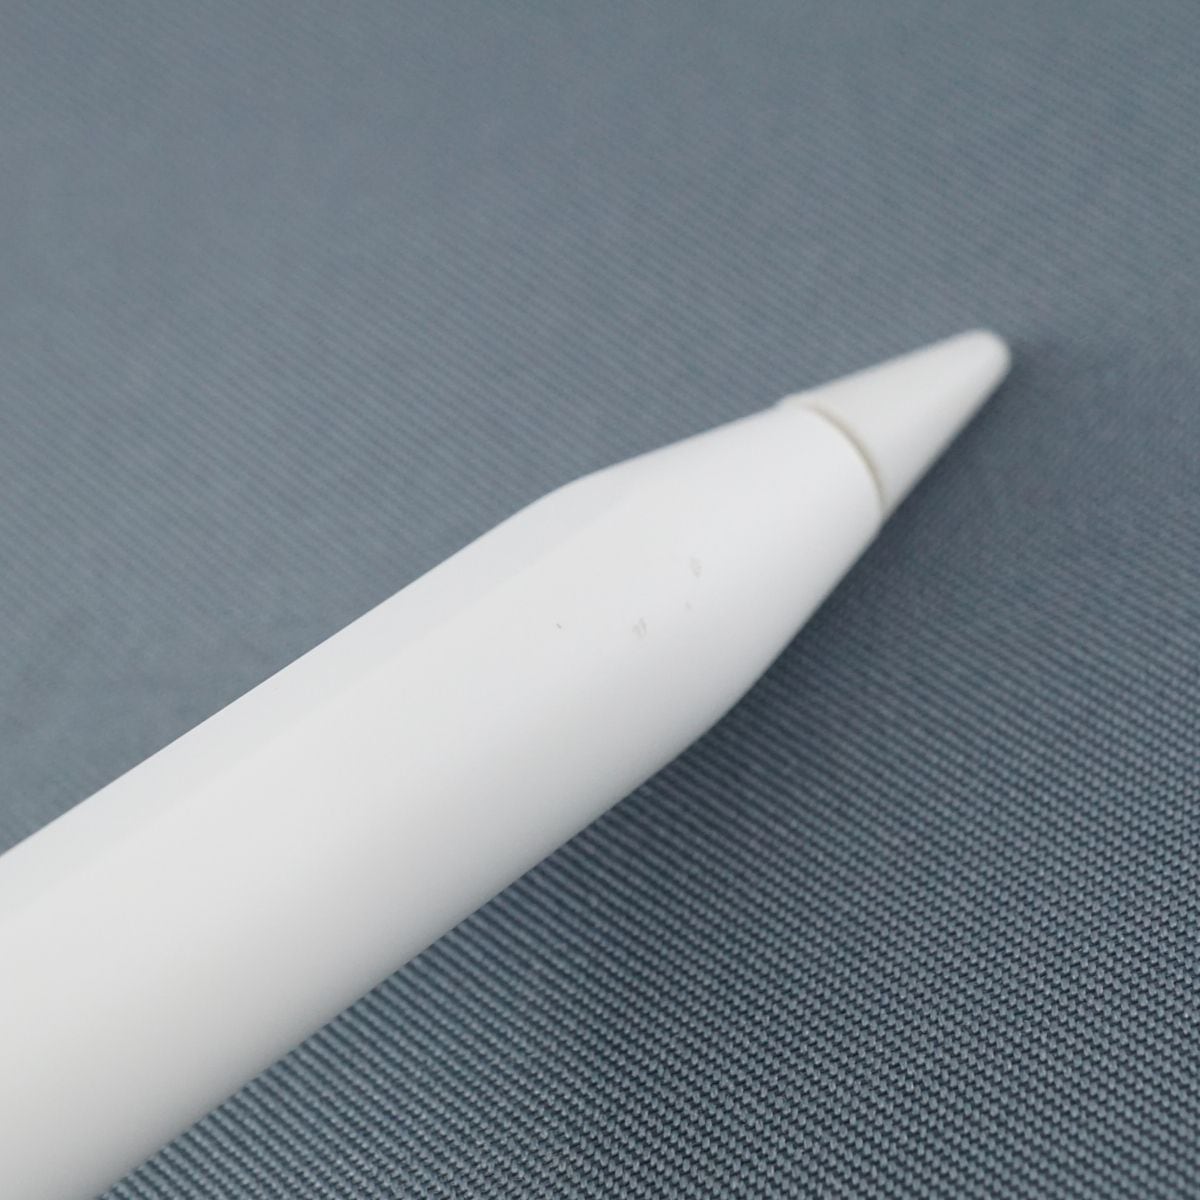 【新品】Apple Pencil 第2世代 MU8F2J/A 送料無料